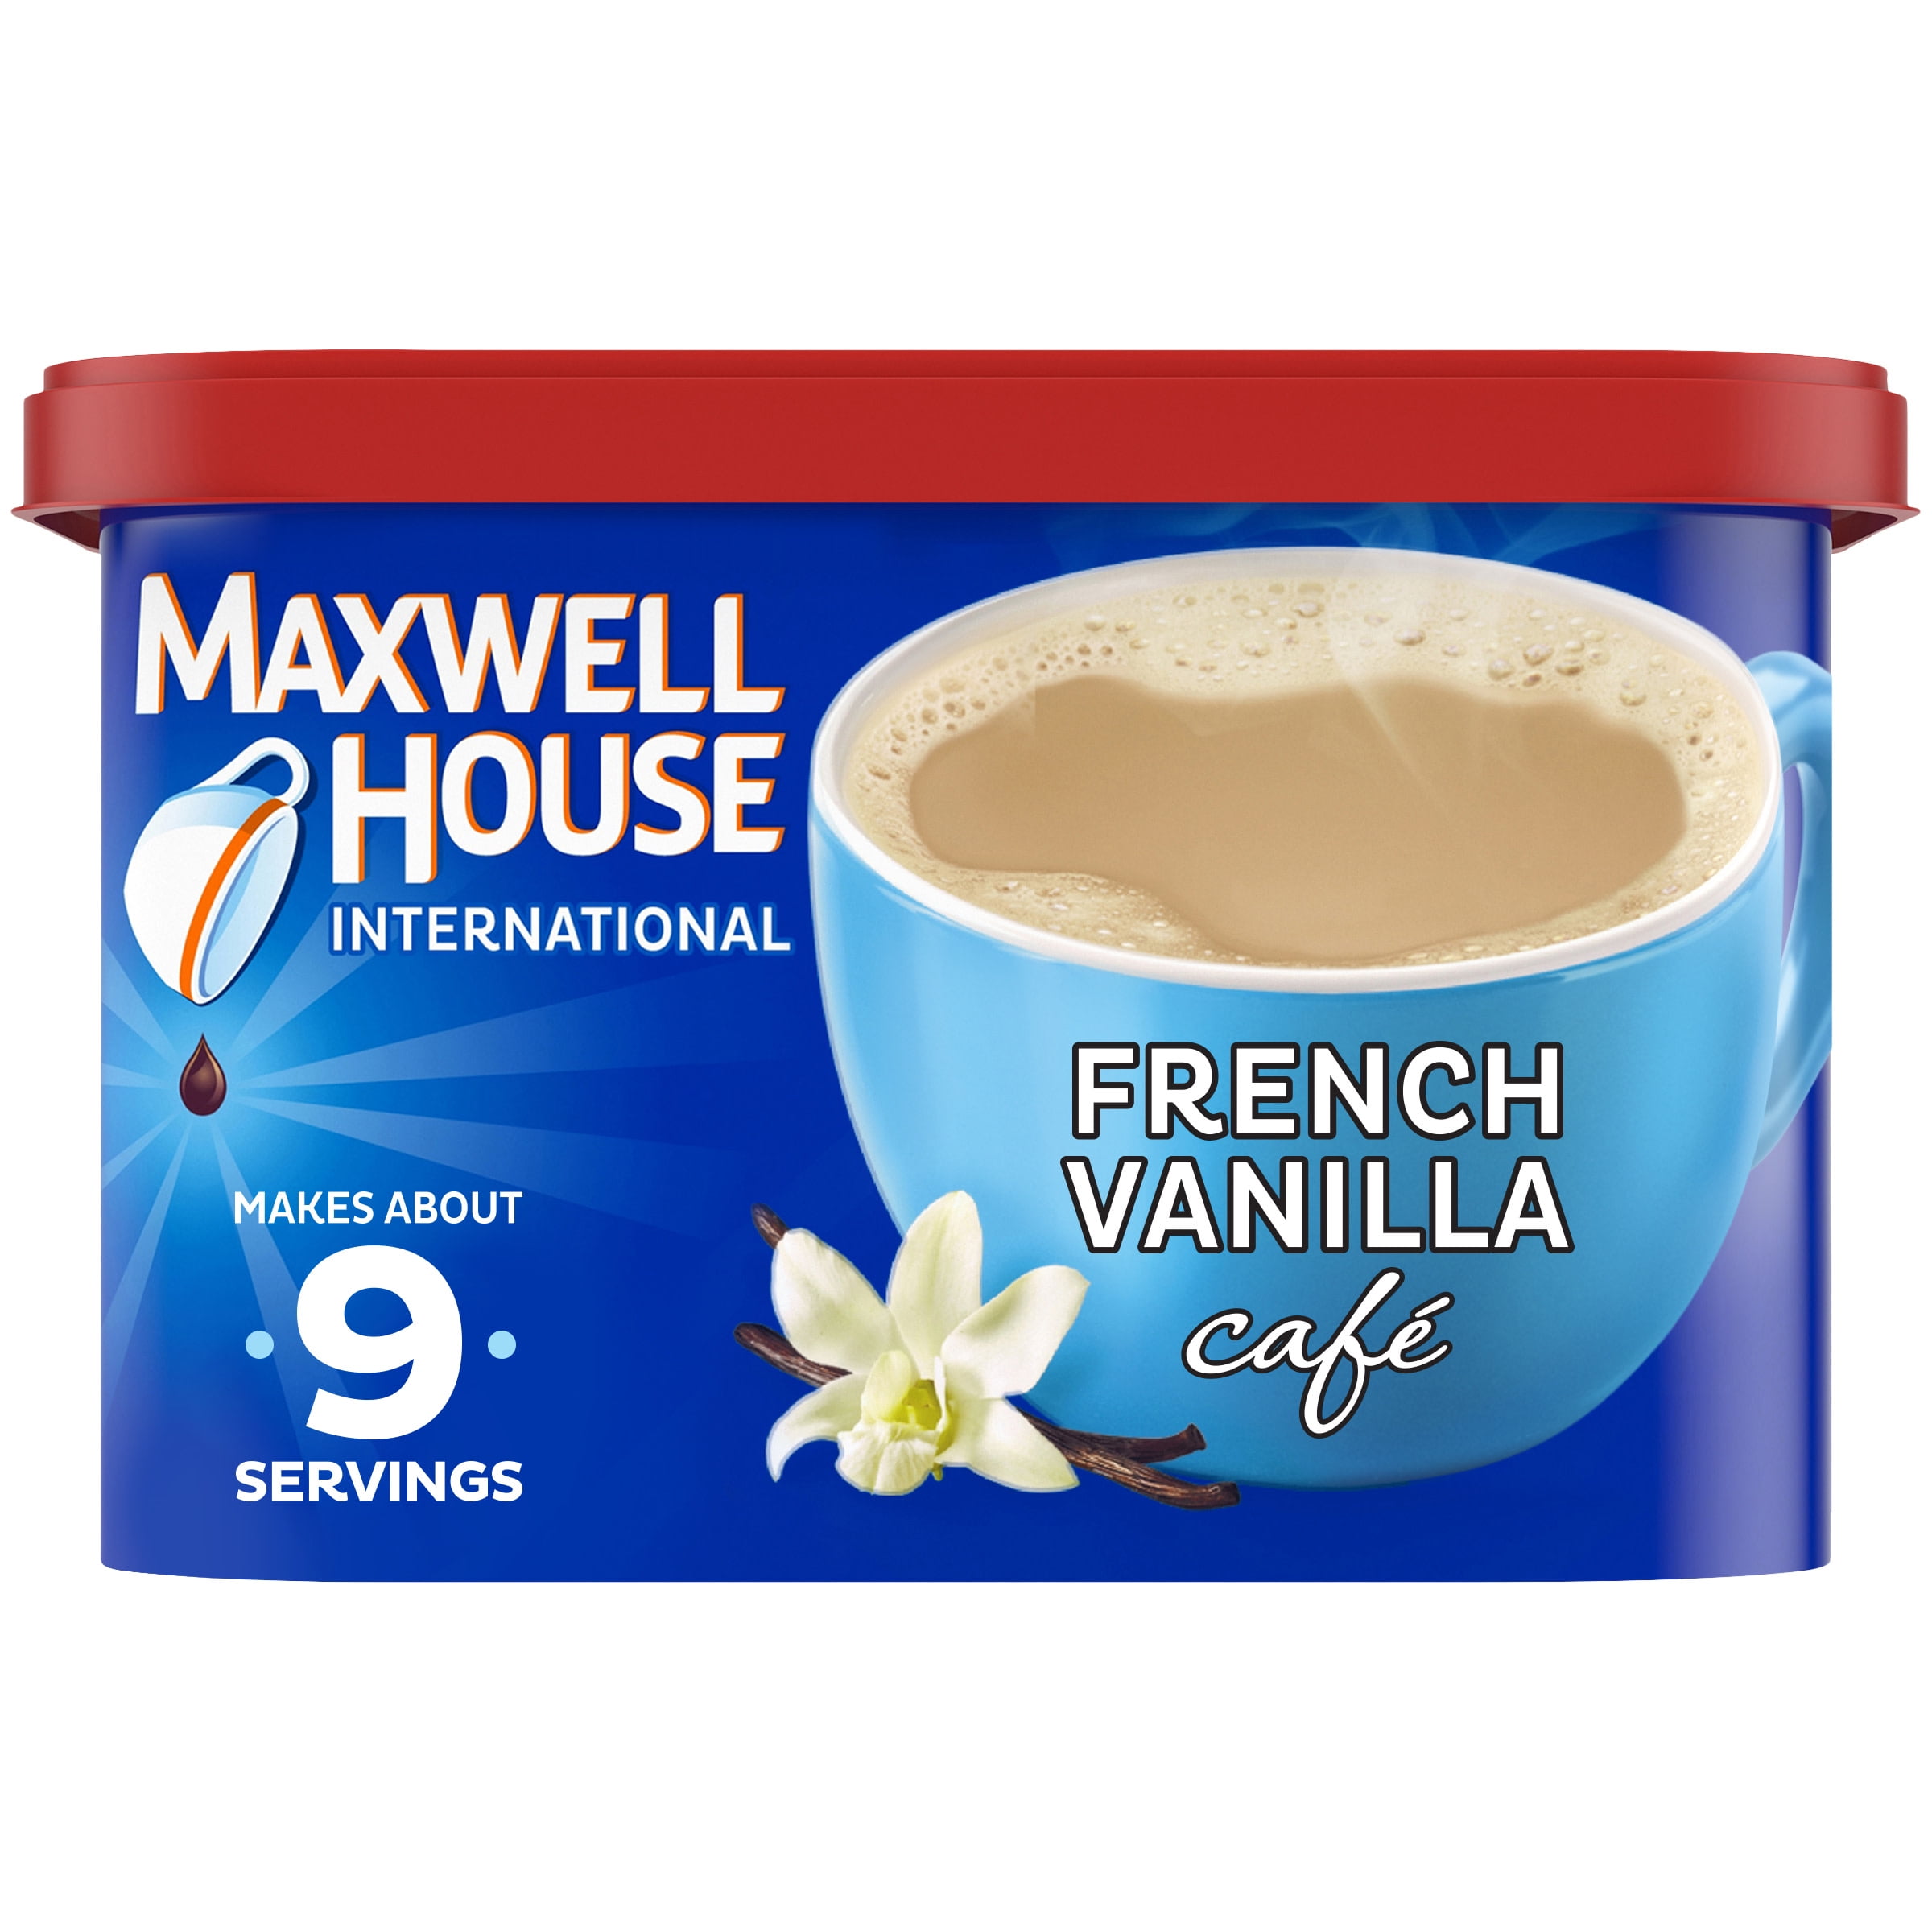 French vanilla